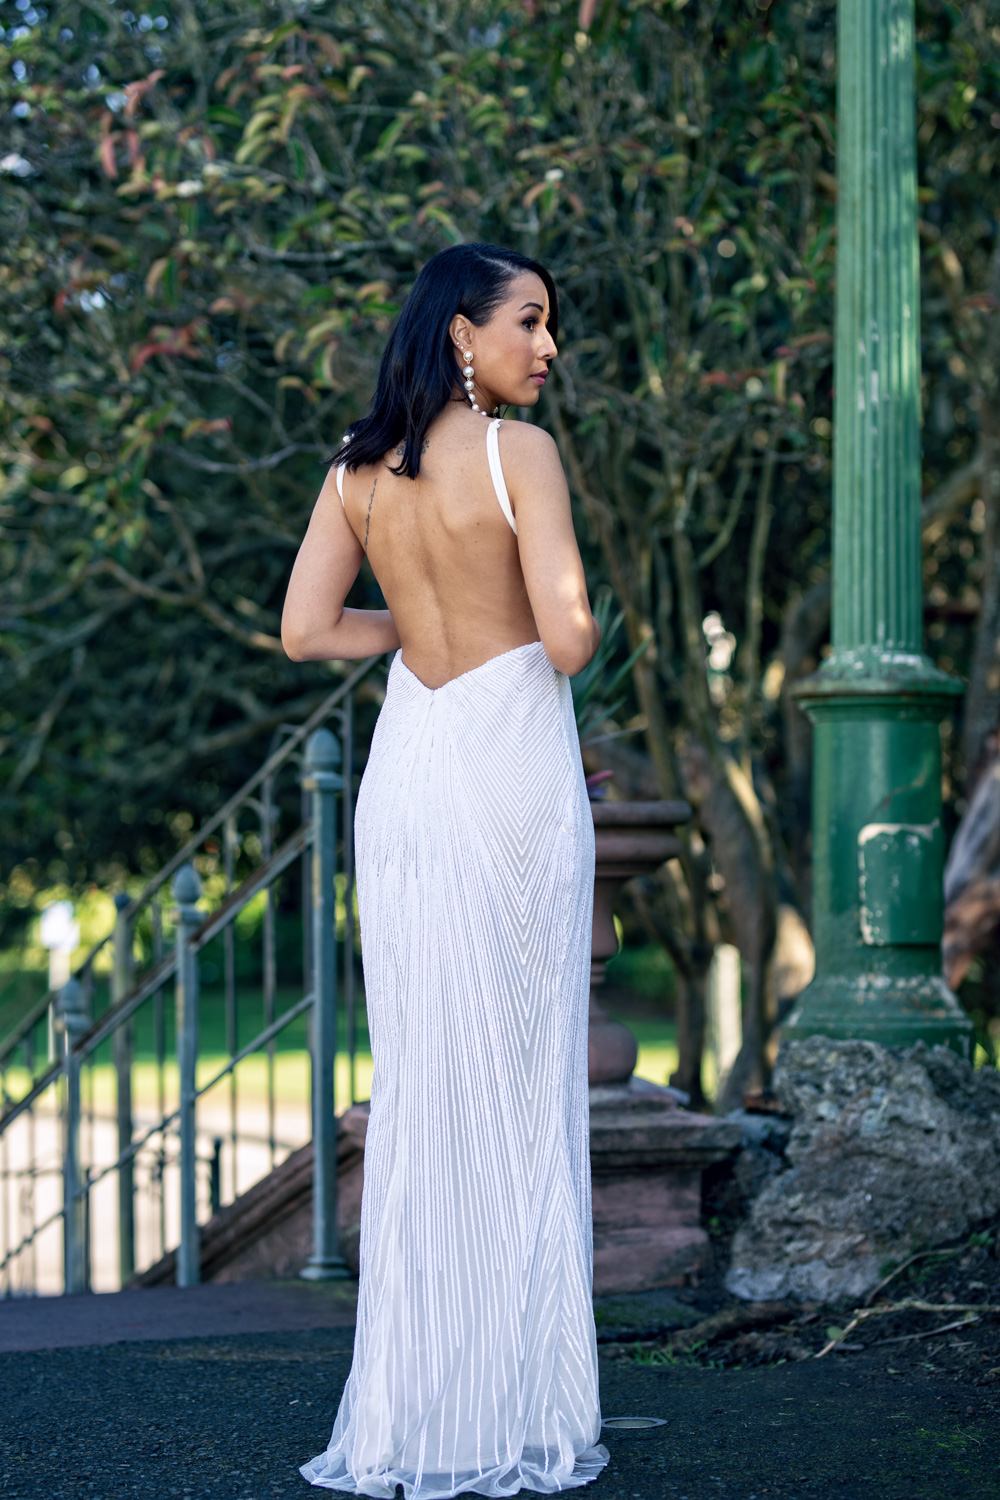 Dress to Impress with Nicole – Rey Marquez Photo